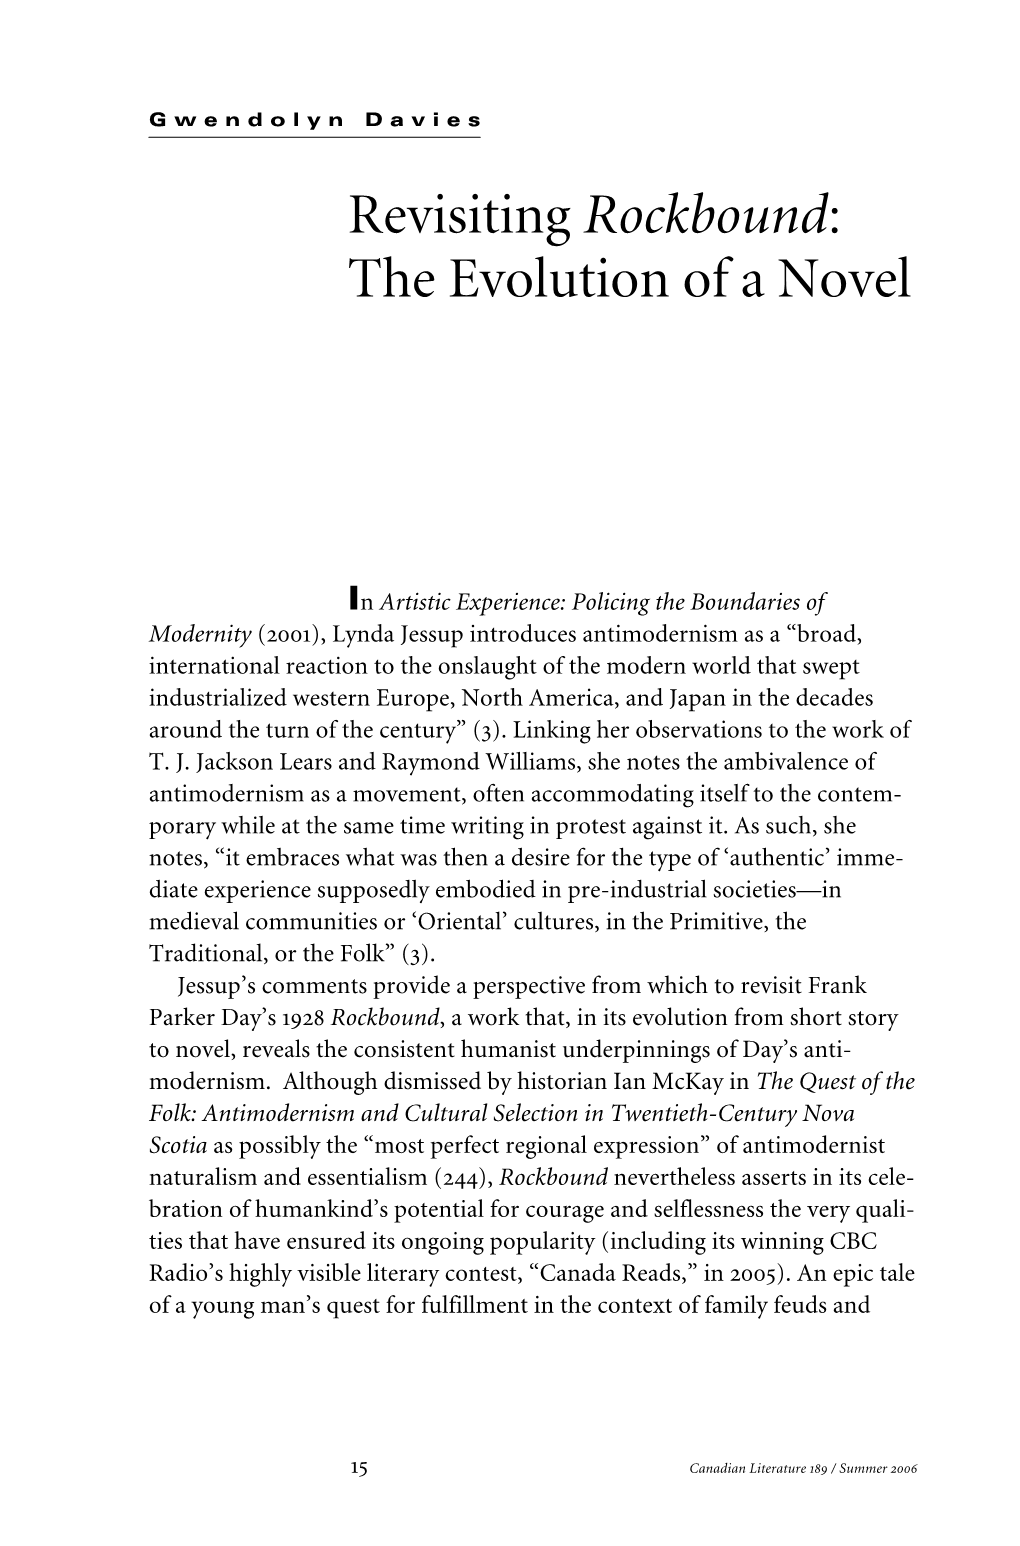 Revisiting Rockbound: the Evolution of a Novel